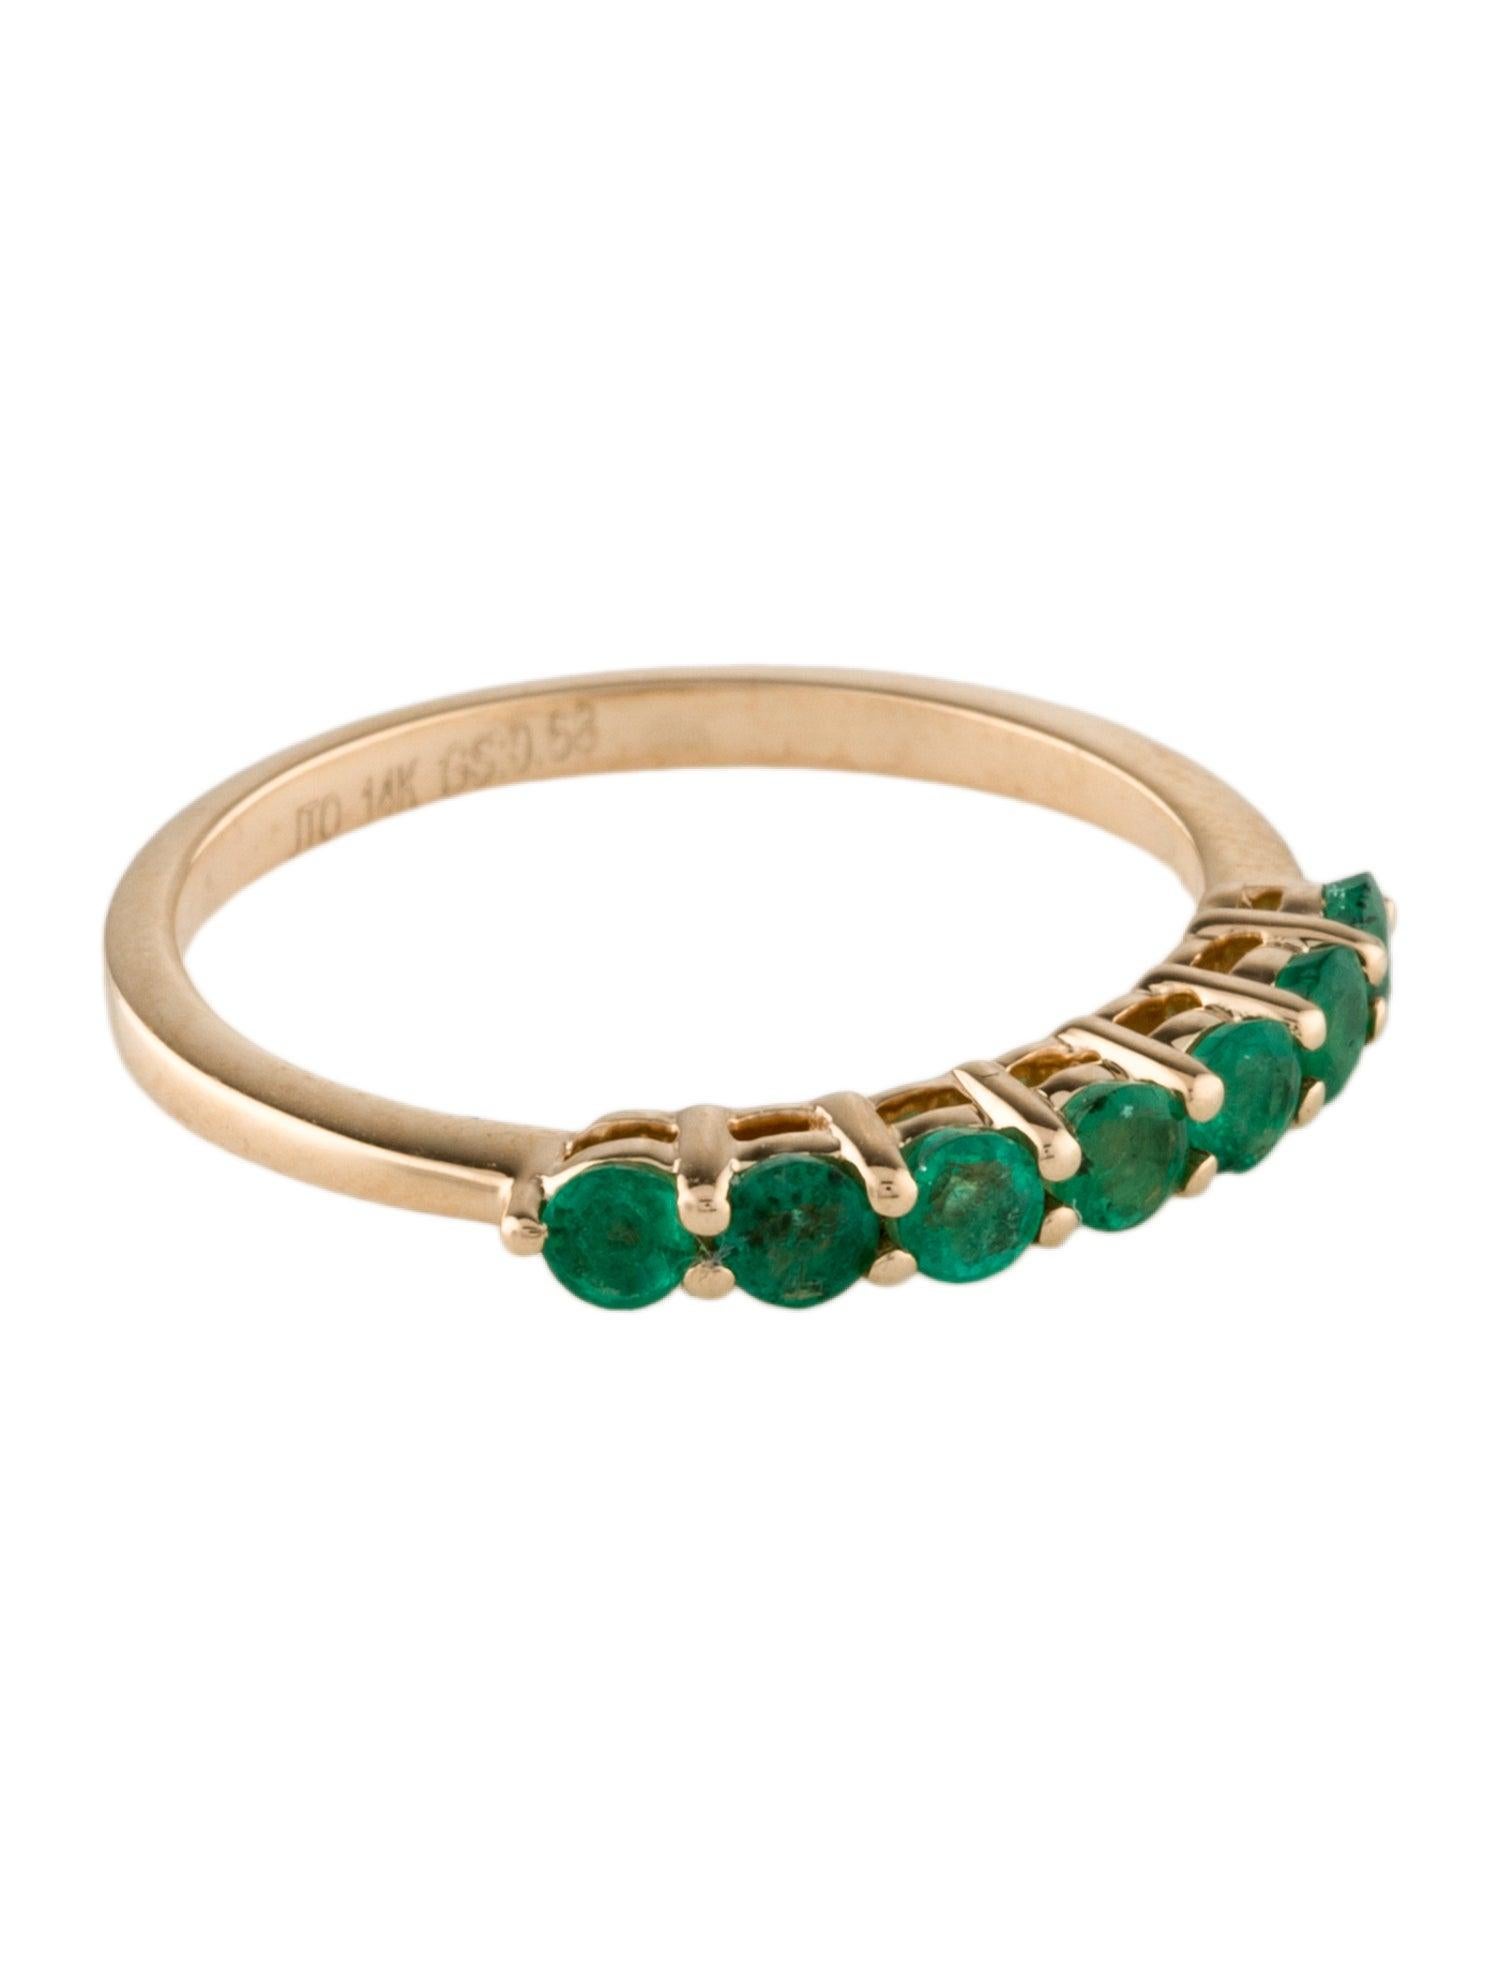 Erhöhen Sie Ihre Schmucksammlung mit der zeitlosen Eleganz unseres 14K Yellow Gold Emerald Bandes. Dieses exquisite Stück in Größe 8 ist mit sieben runden, modifizierten Brillant-Smaragden von insgesamt 0,55 Karat besetzt. Jeder Smaragd, der